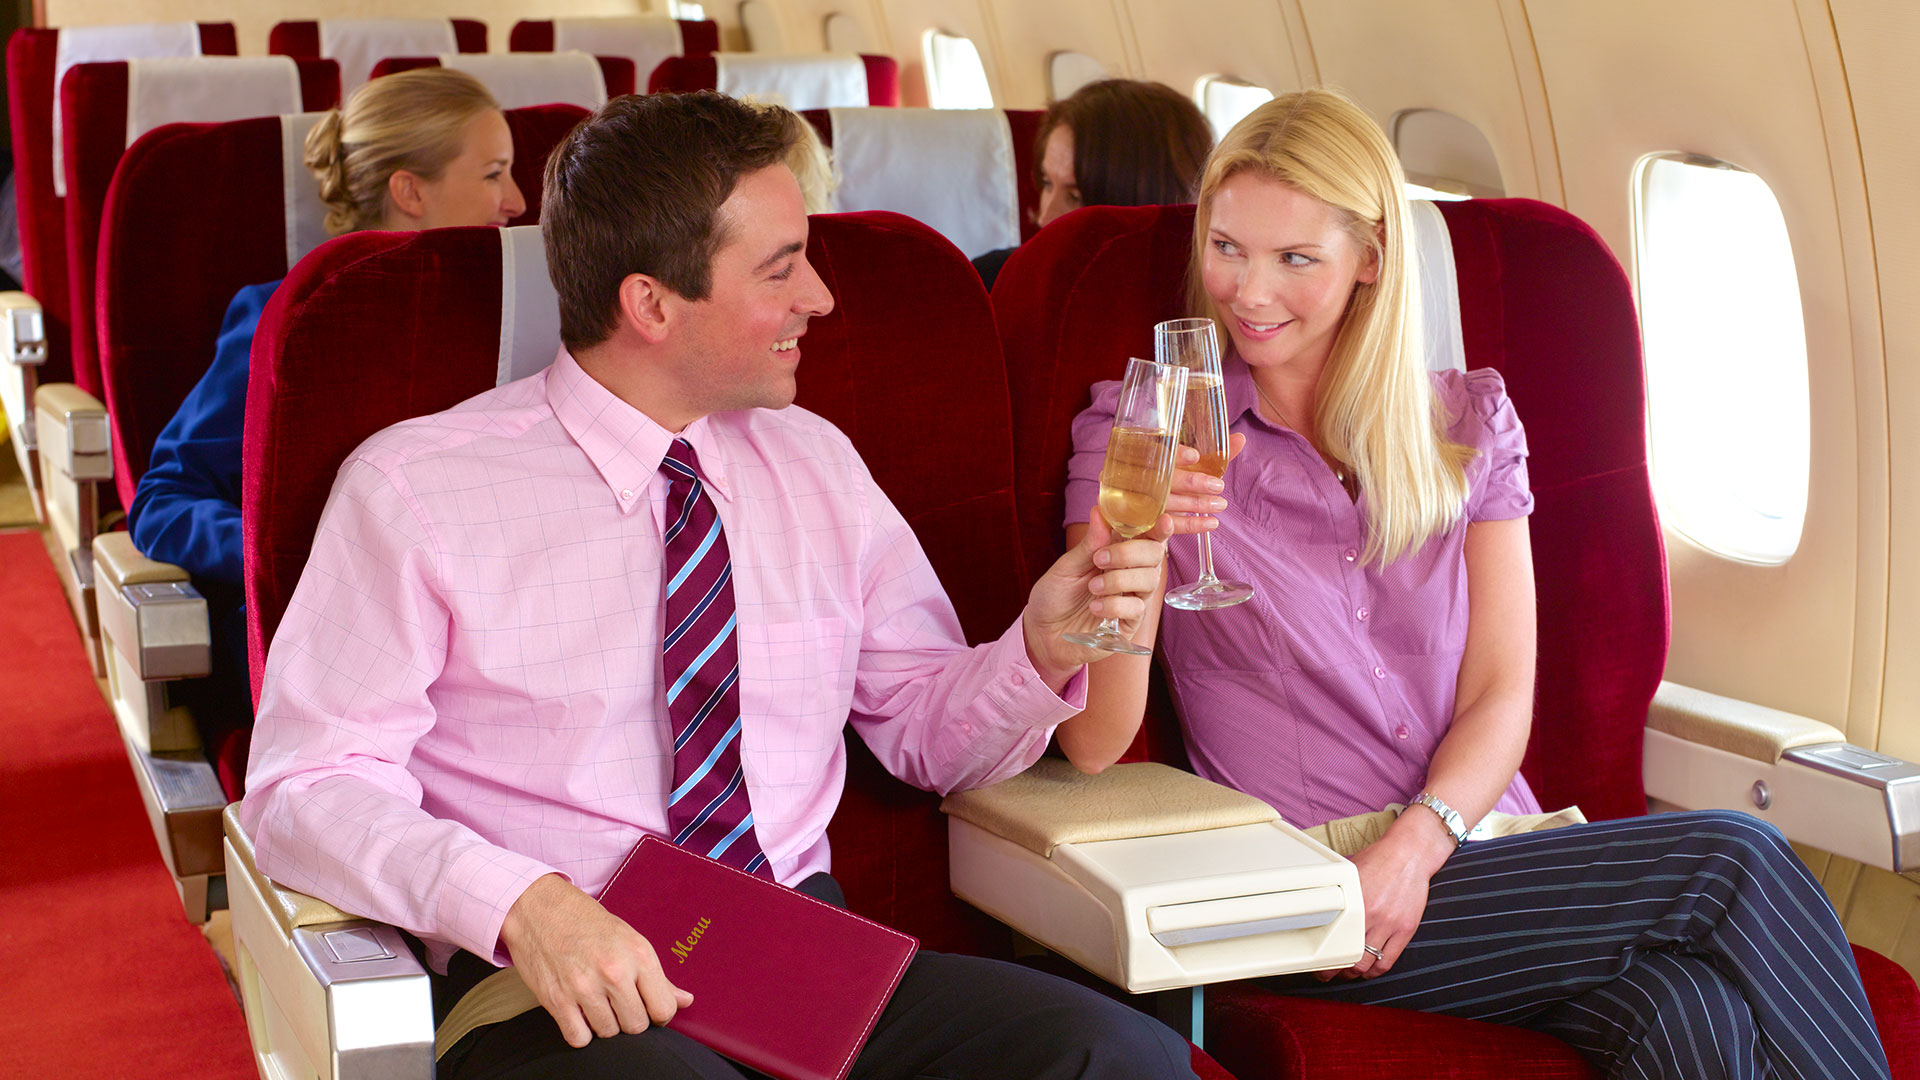 El especialista advirtió que es conveniente no consumir alcohol durante un vuelo largo, ya que aumenta el riesgo de deshidratación (Getty Images)